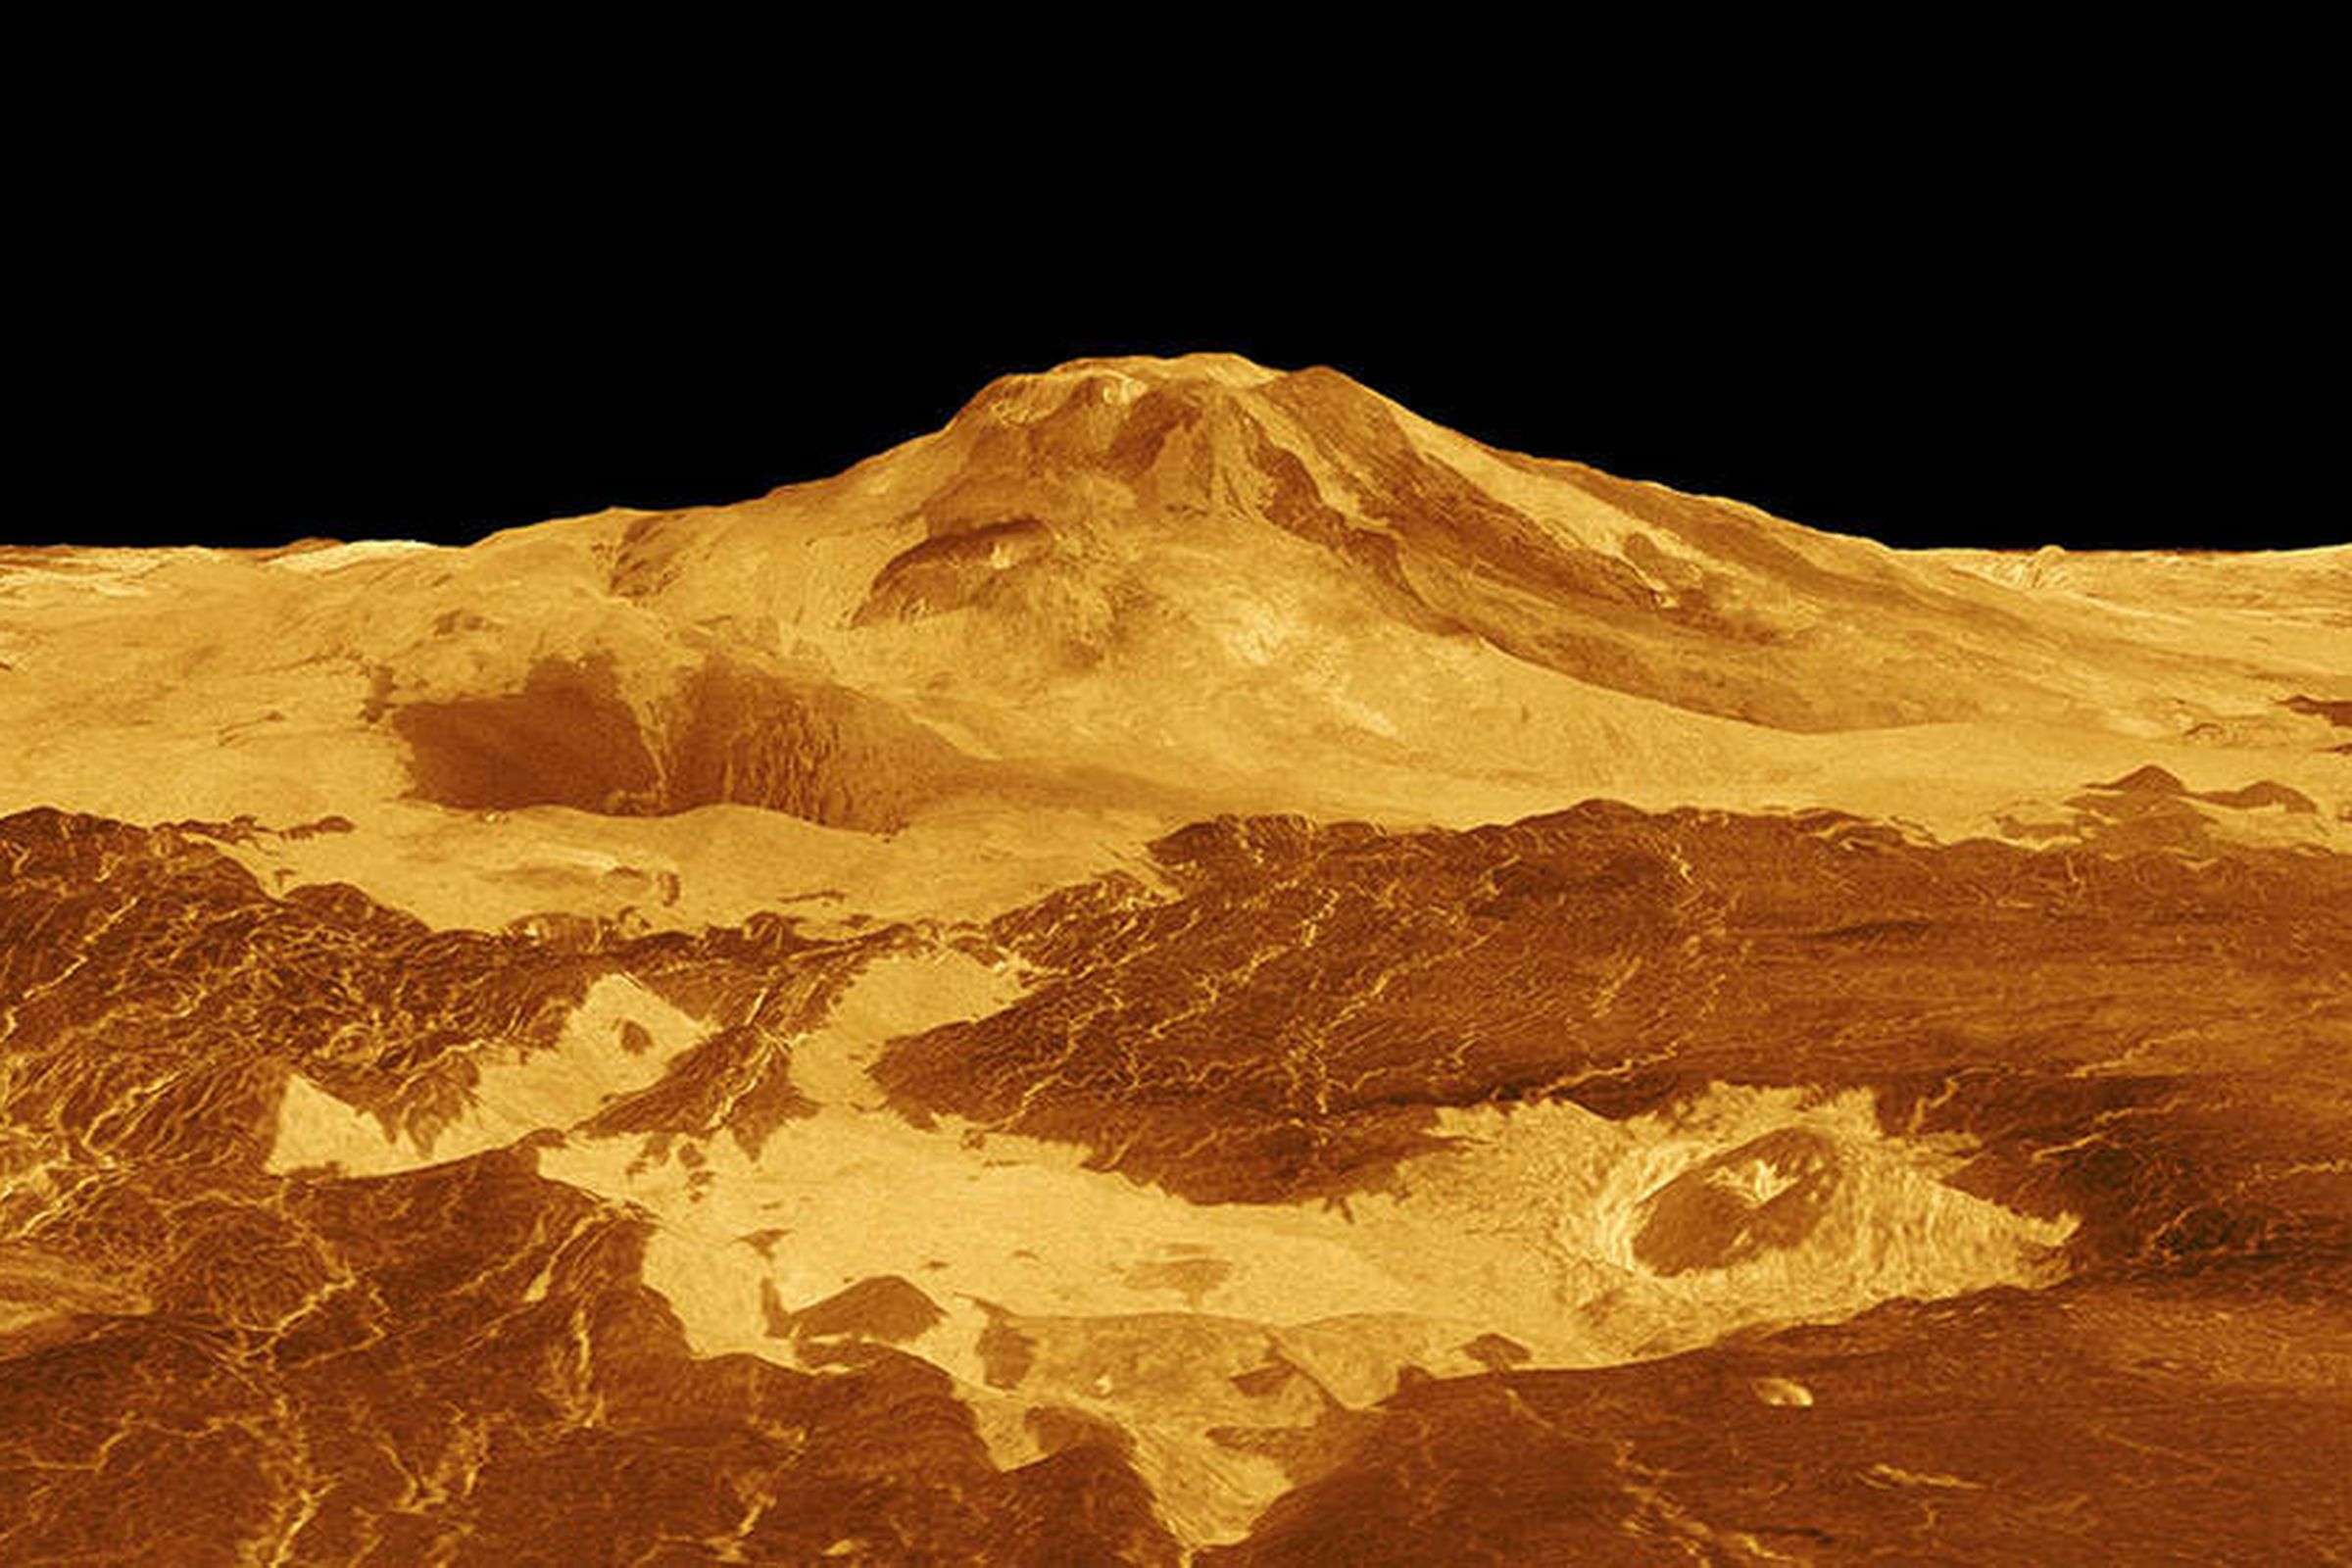 3D rendering of a volcano on Venus